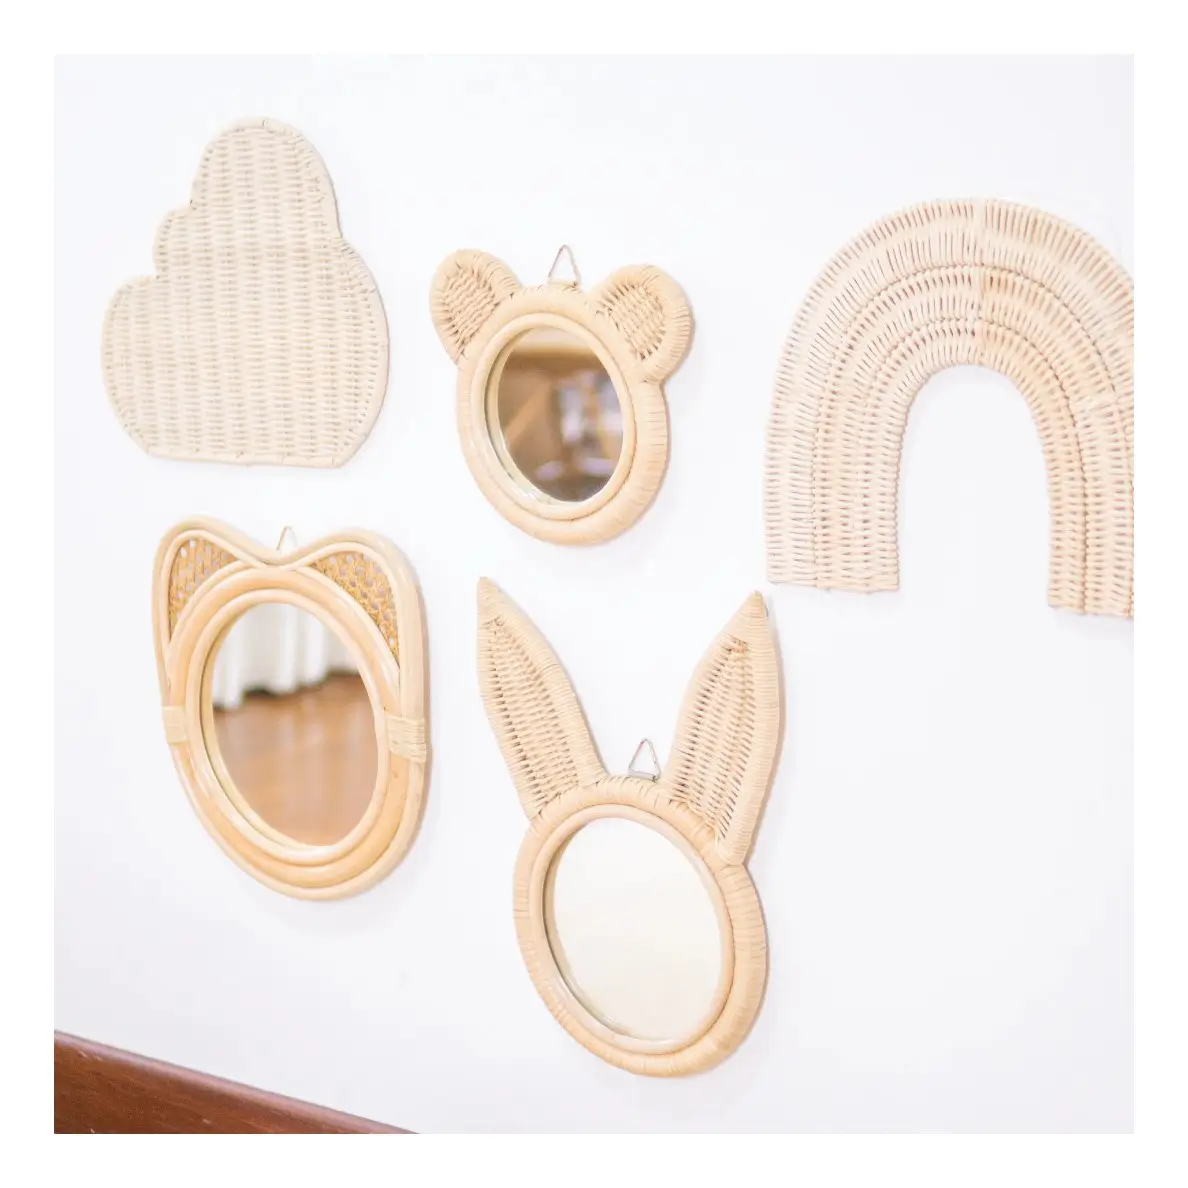 Küçük tavşan rattan ayna bebek odası için çocuk yatak odası dekorasyon hayvan şekilli aynalar toptan